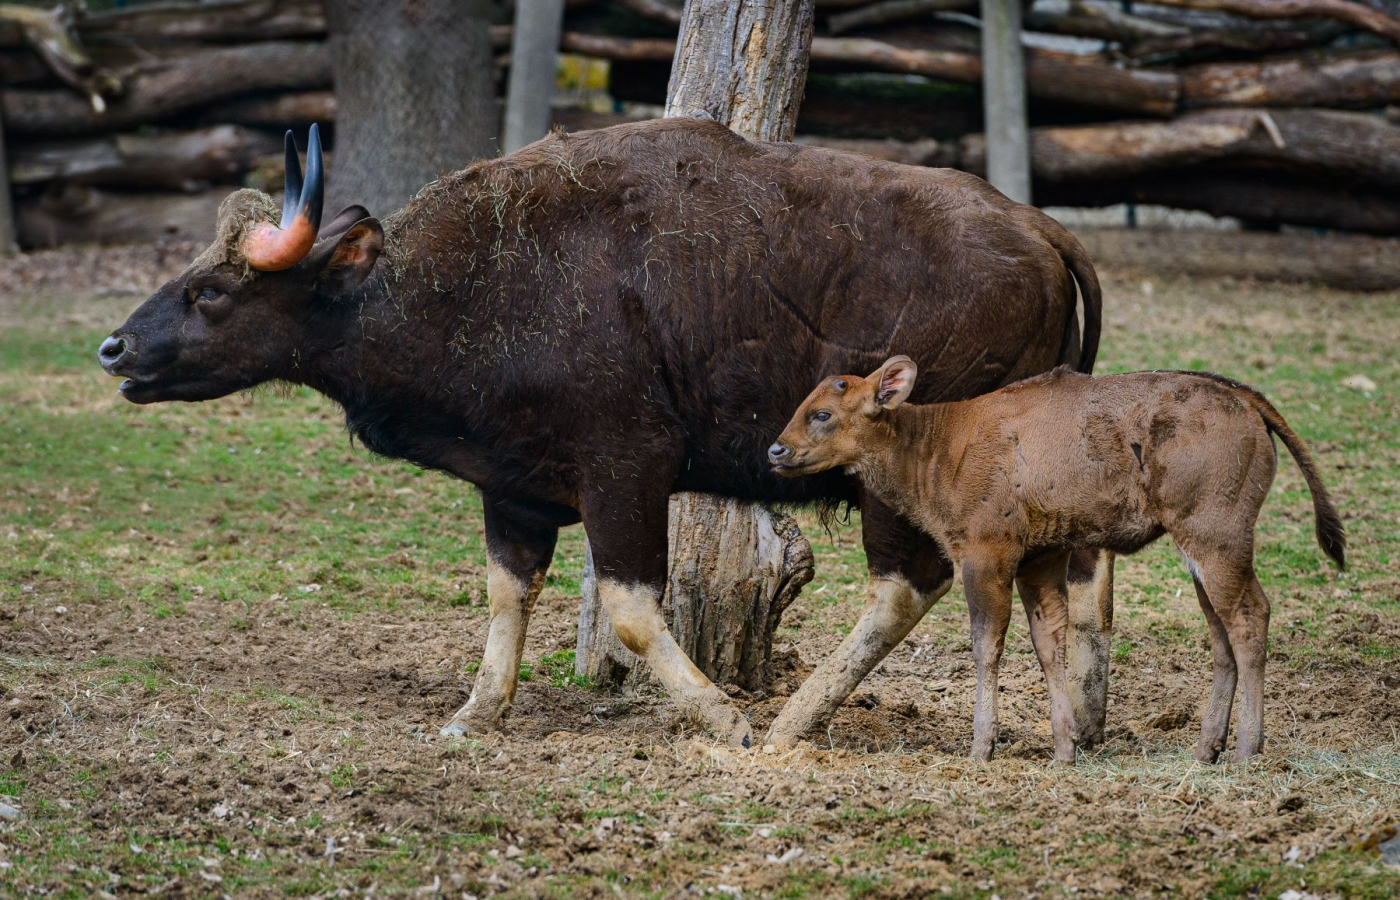 První mládě gaurů je samička!